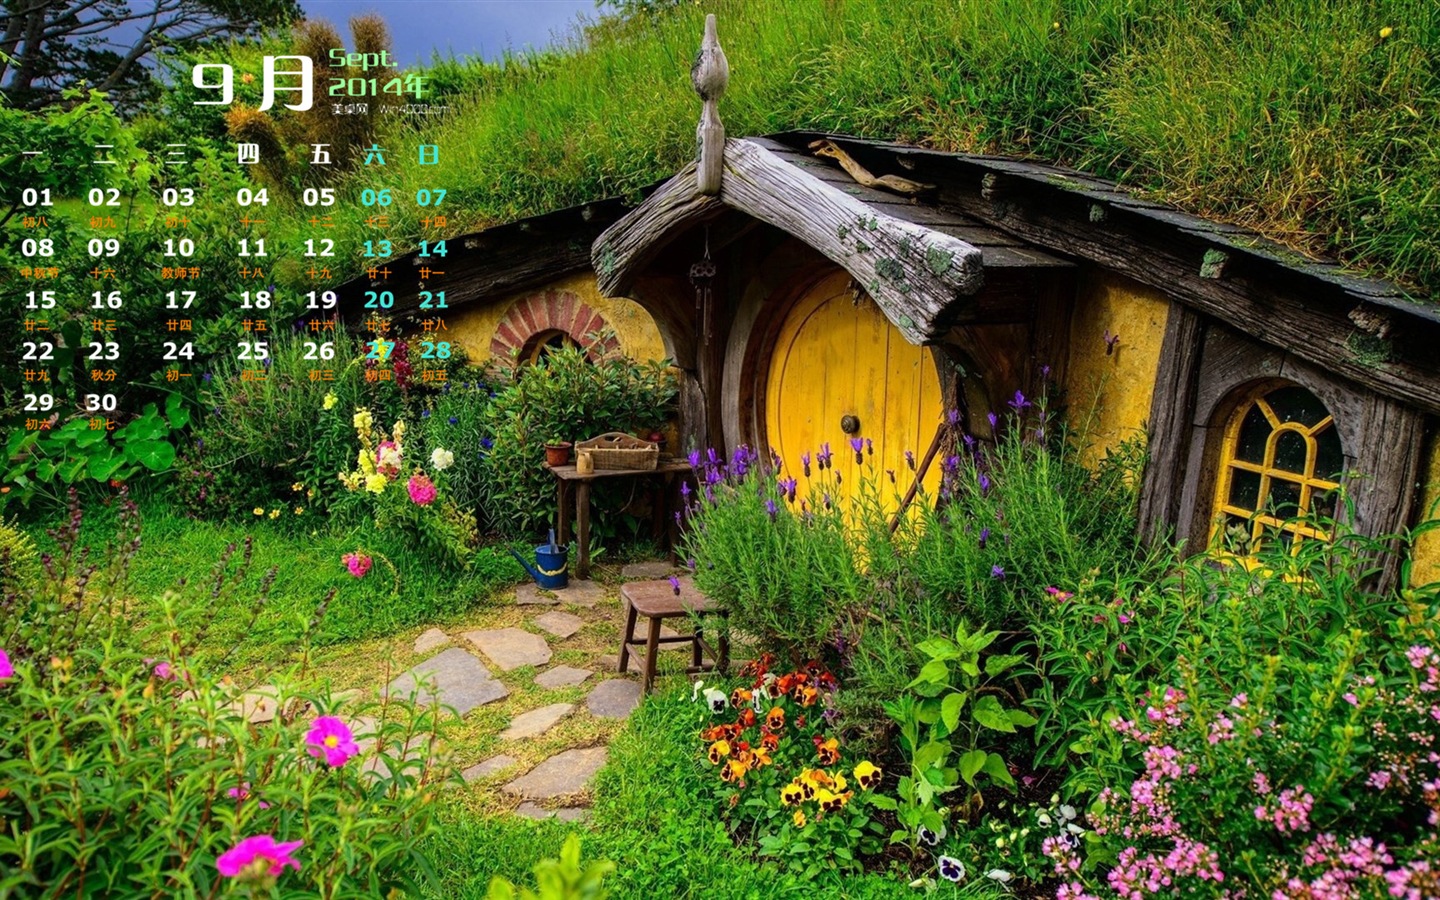 09 2014 wallpaper Calendario (1) #11 - 1440x900